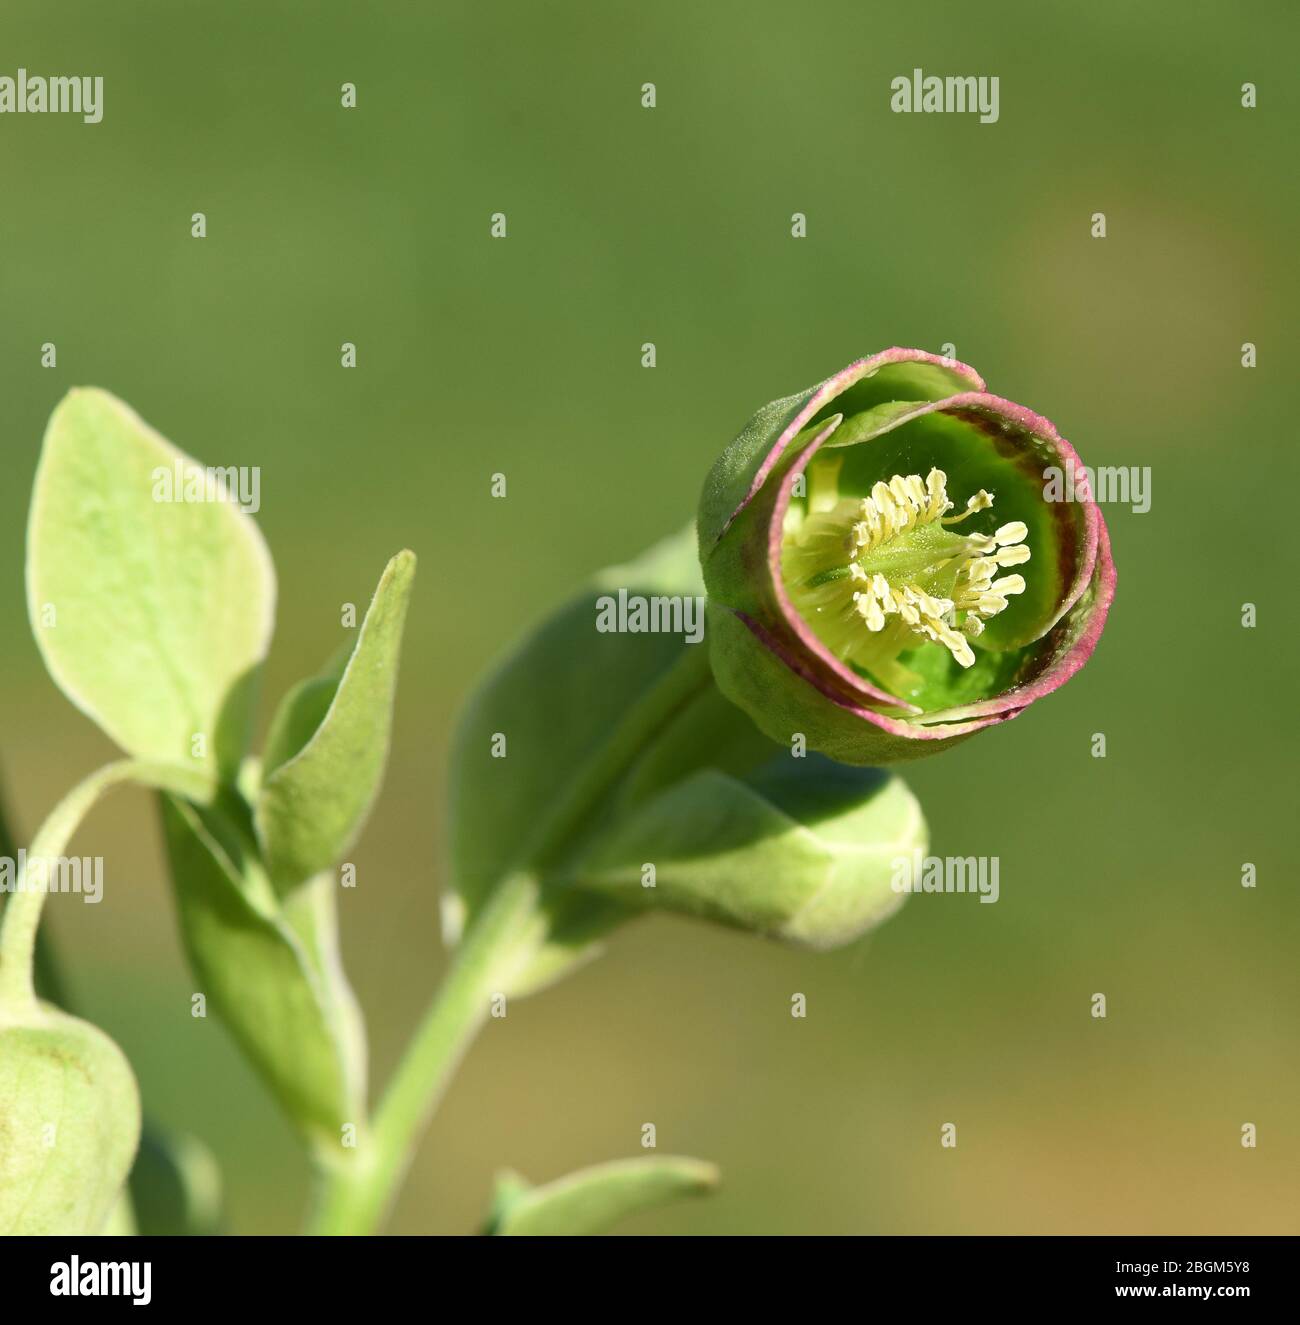 Stinkende Nieswurz, Helleborus foetidus  ist eine wichtige Heilpflanze und eine Duftpflanze mit gruen, gelben Blueten und bluet im Winter. Smelly hell Stock Photo